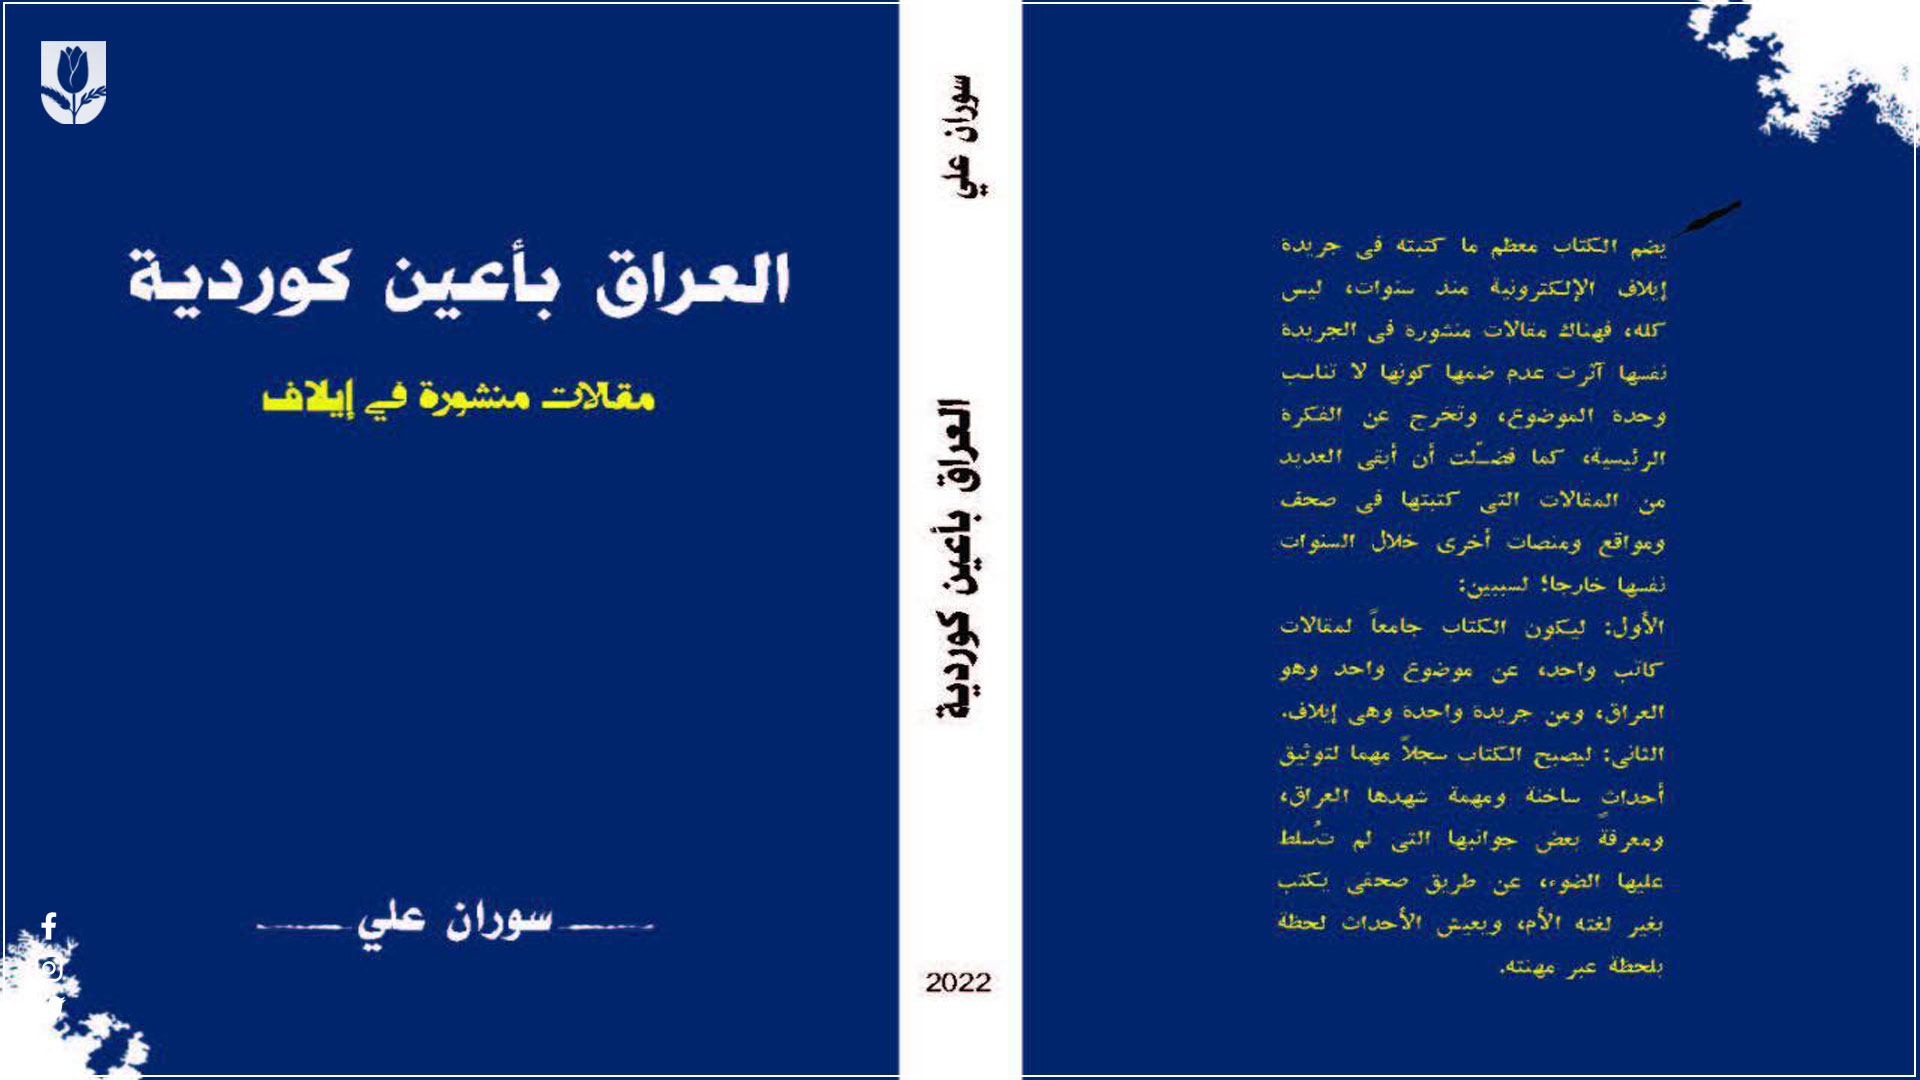 مراسيم للتعريف بكتاب العراق باعين كوردية للكاتب سوان علي 